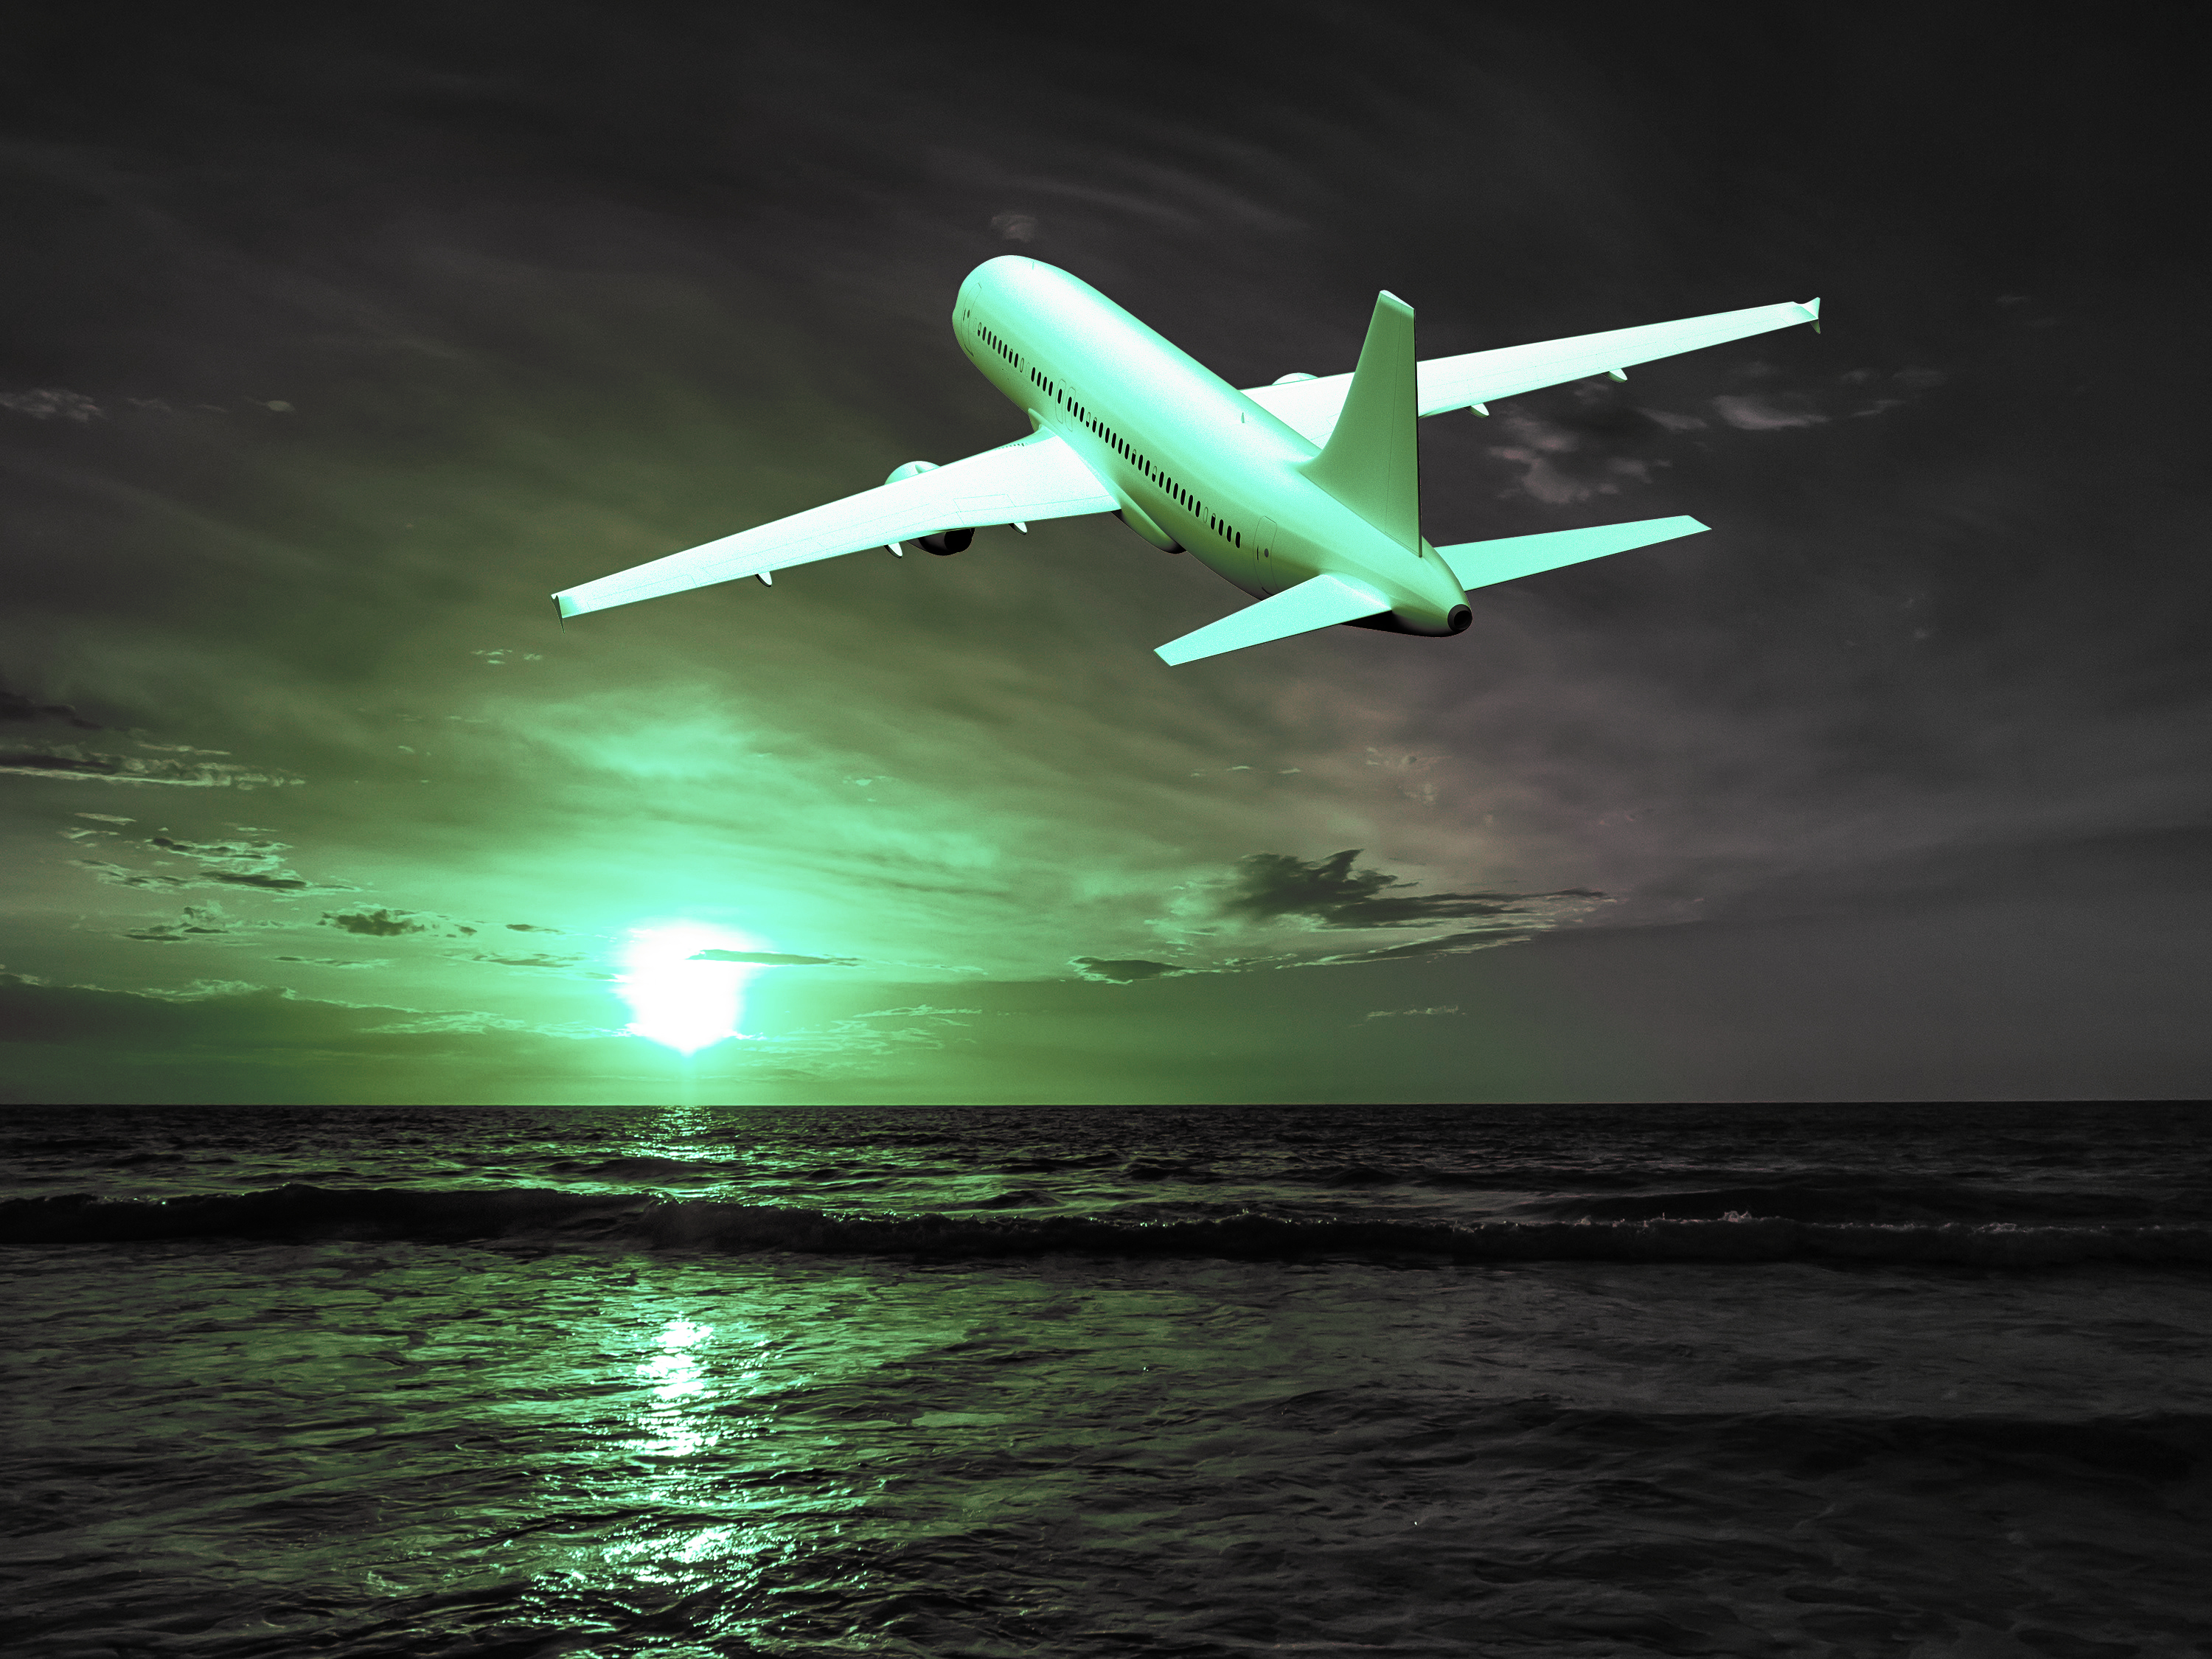 Фото небо, солнце, самолет, авиация, полет - бесплатные картинки на Fonwall